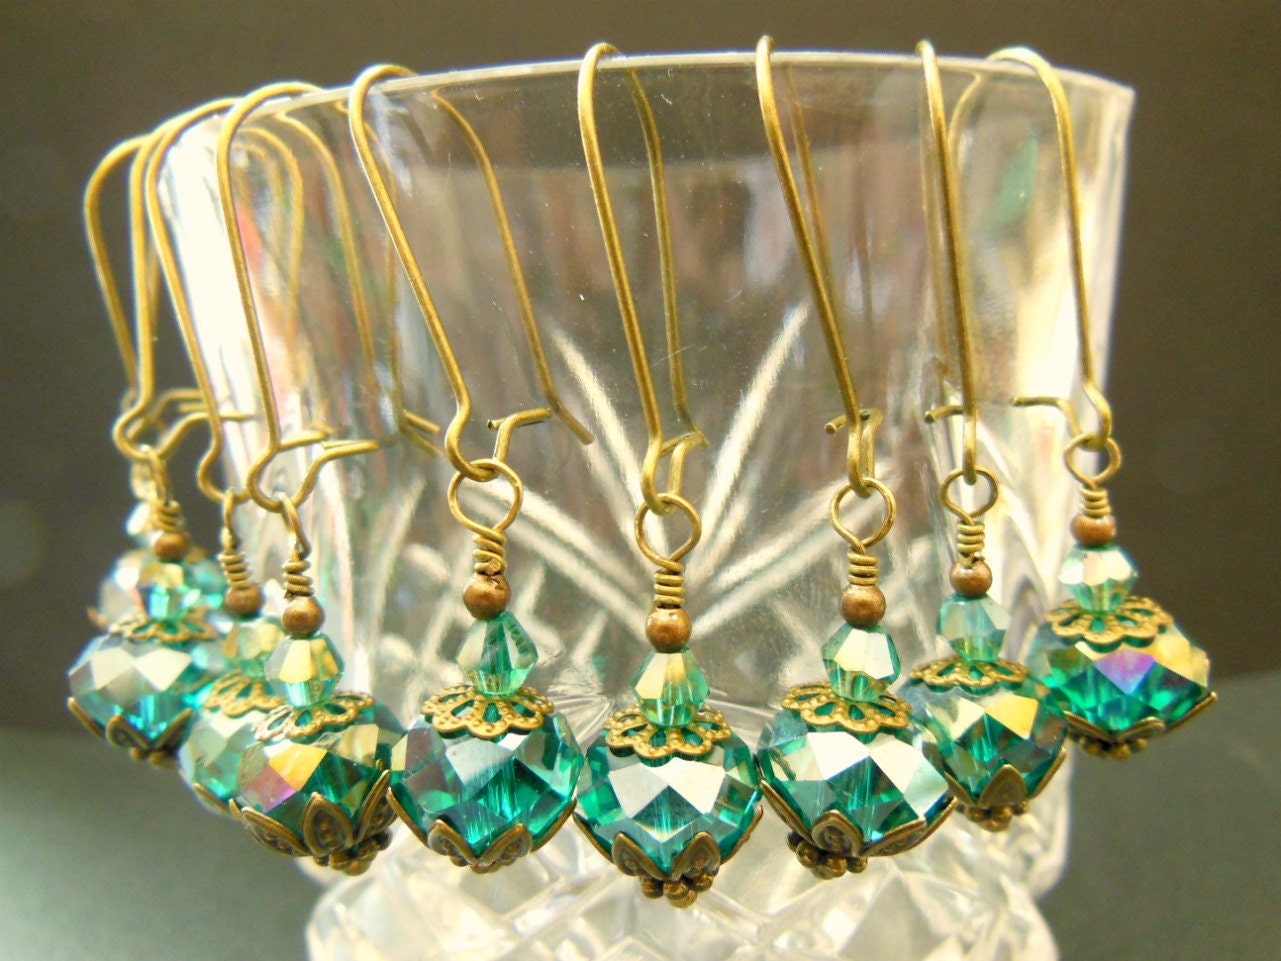 BRIDESMAIDS EARRINGS set of 5 teal peacock vintage earrings